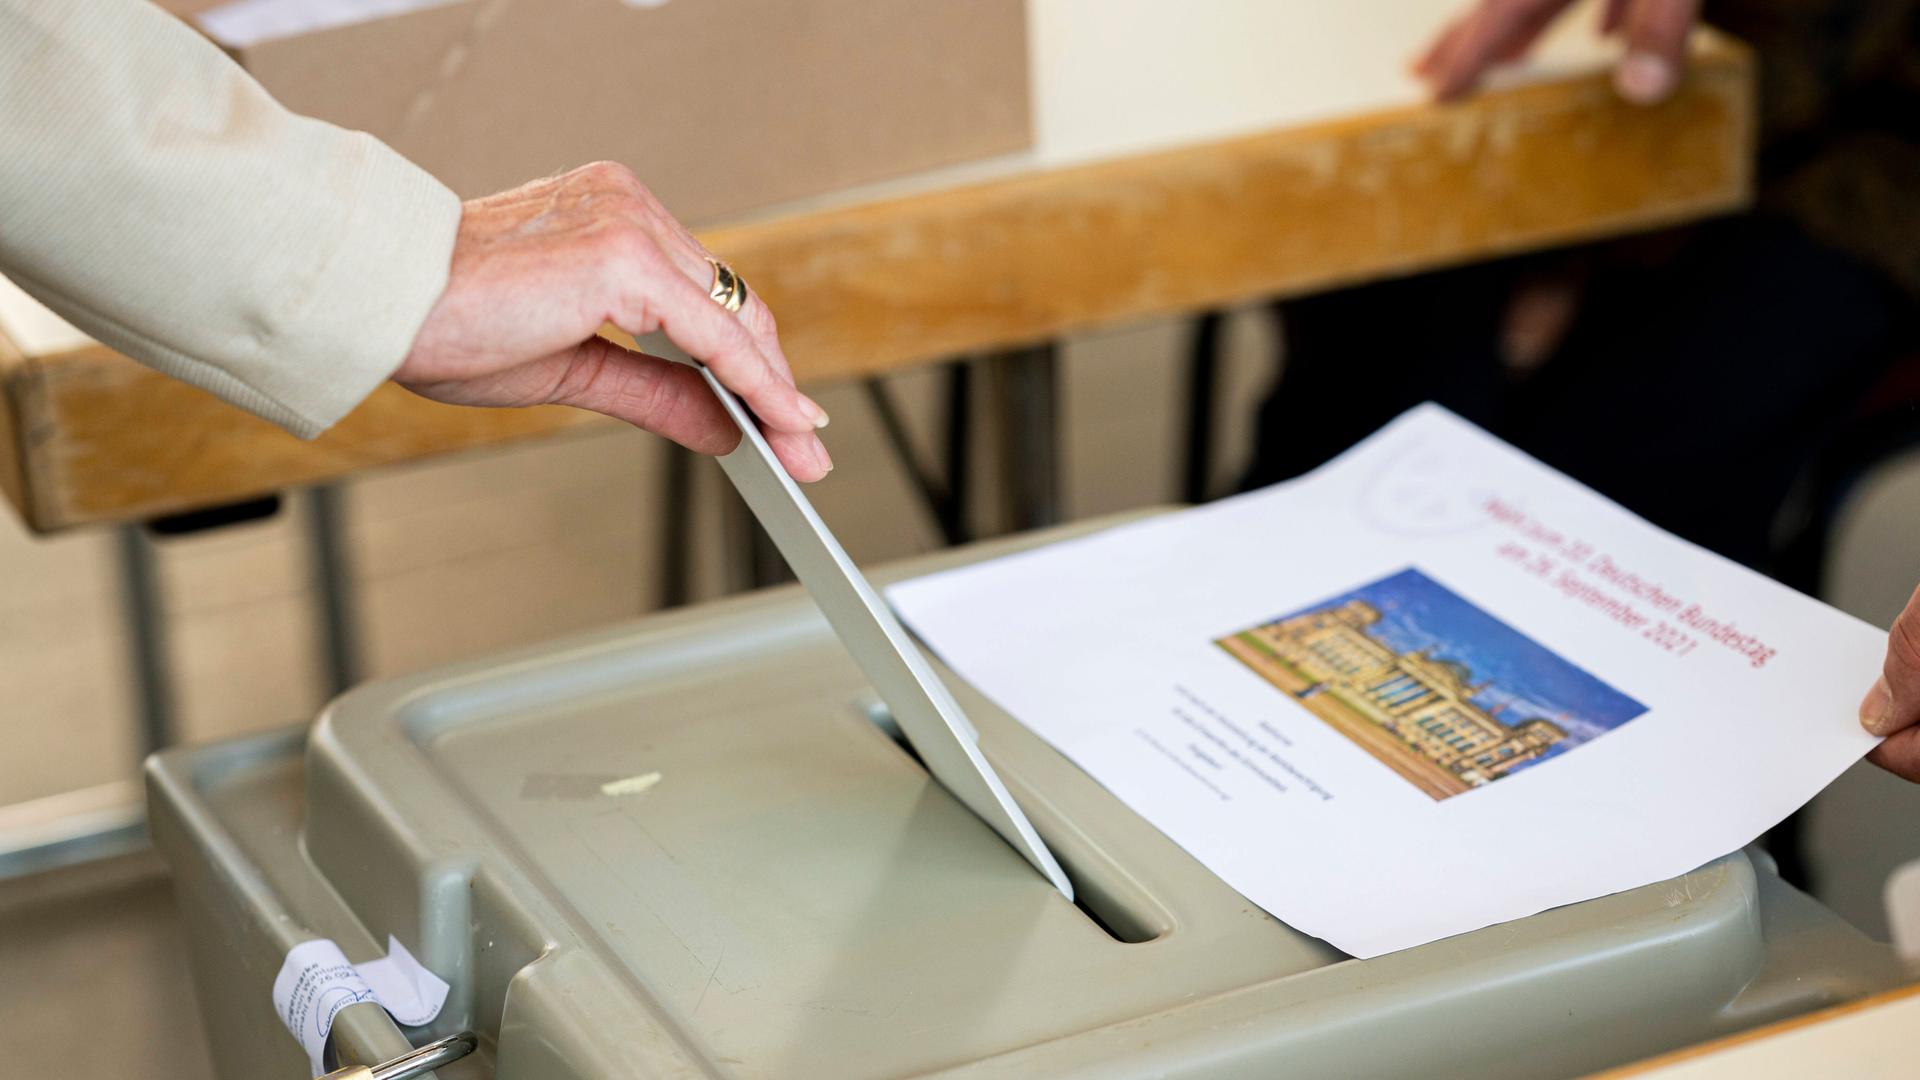 Zu sehen ist die Hand einer Frau in einem Wahllokal , die ihren Stimmzettel in den Schlitz einer Wahlurne steckt.